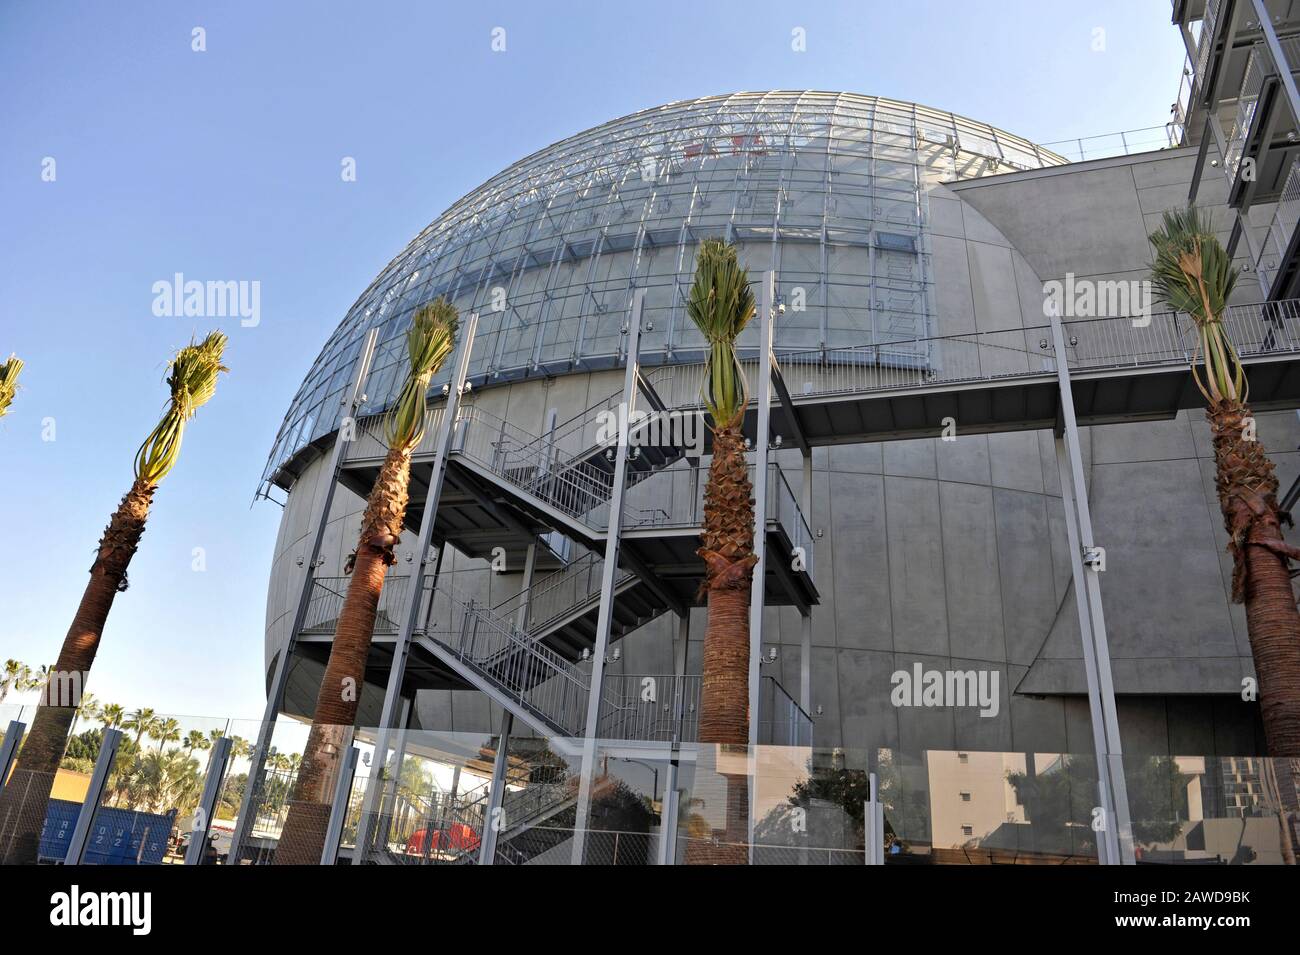 Los Angeles, CA, USA. Februar 2020. Das fast fertiggestellte Kugelgebäude an der Academy Museum of Motion Pictures wurde vom Architekten Renzo Piano entworfen. Kredit: Robert Landau/Alamy Live News Stockfoto